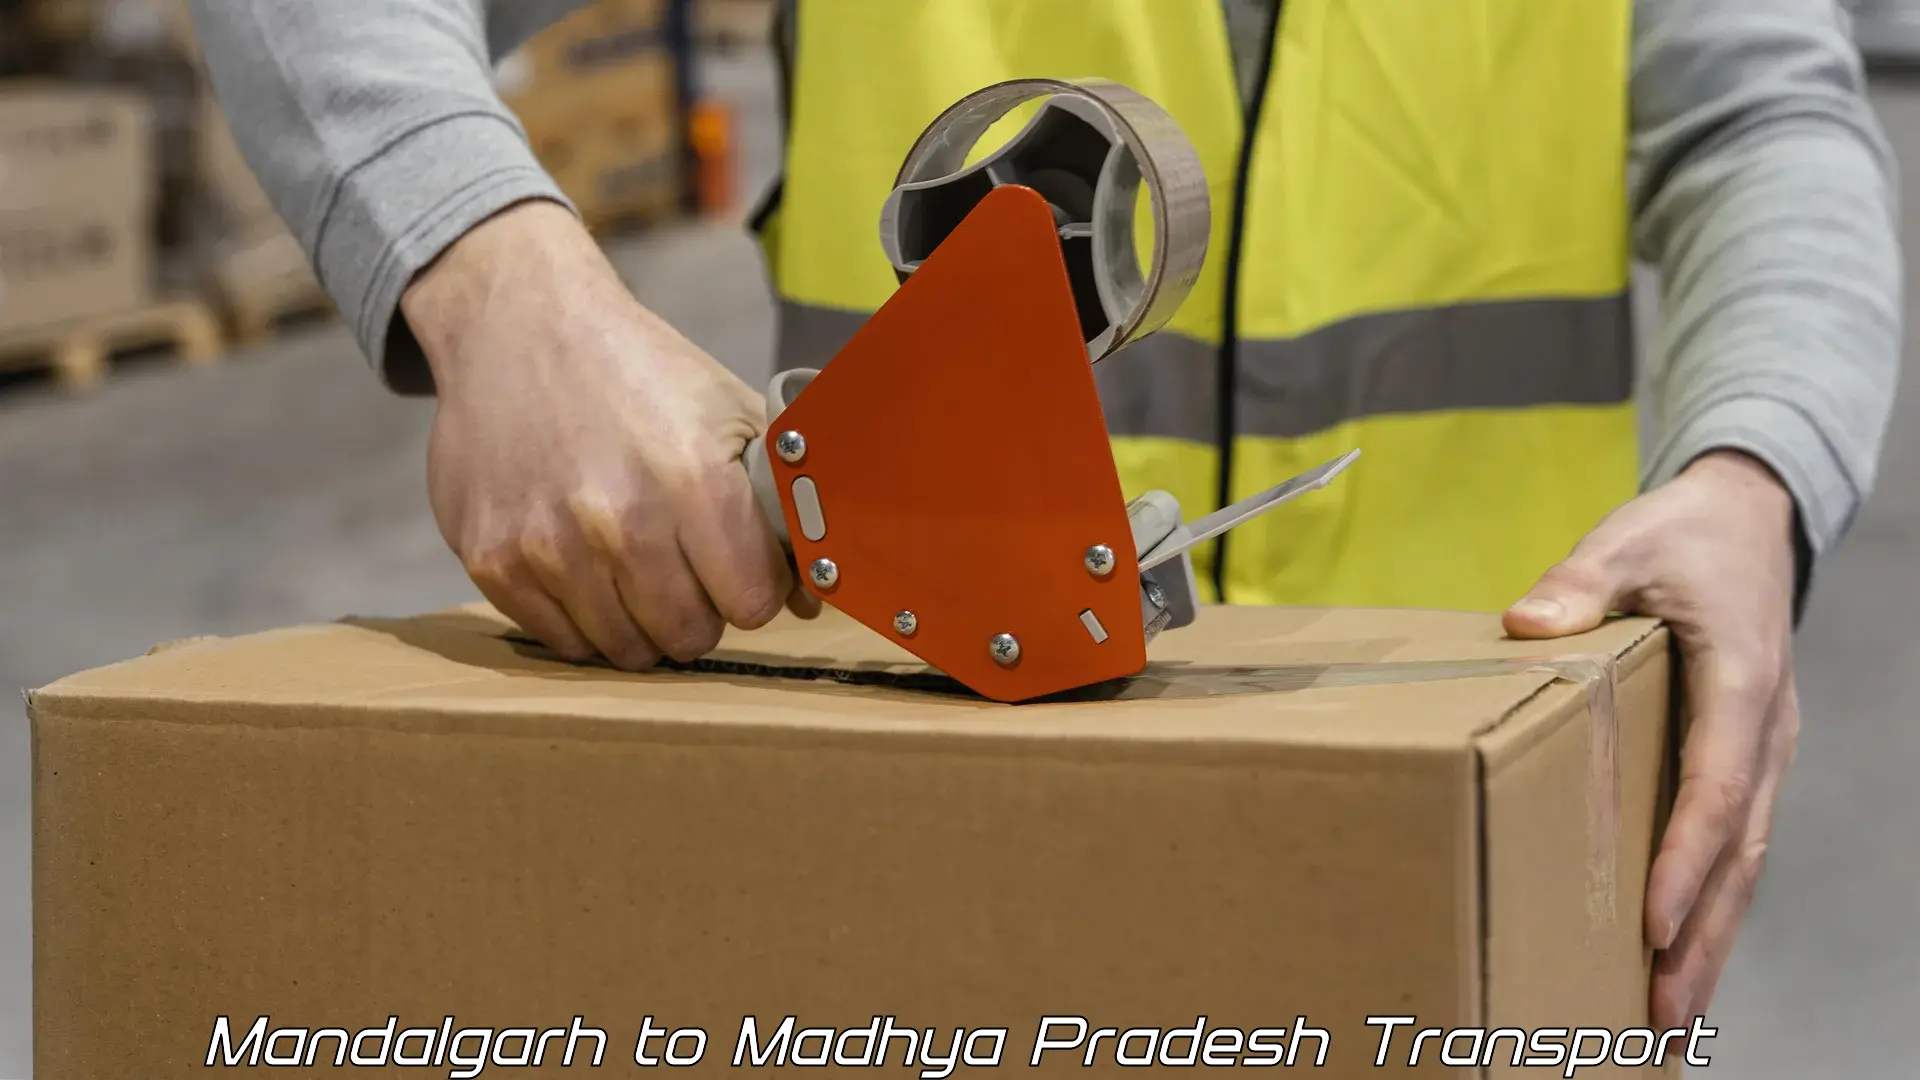 Shipping partner Mandalgarh to Rahatgarh